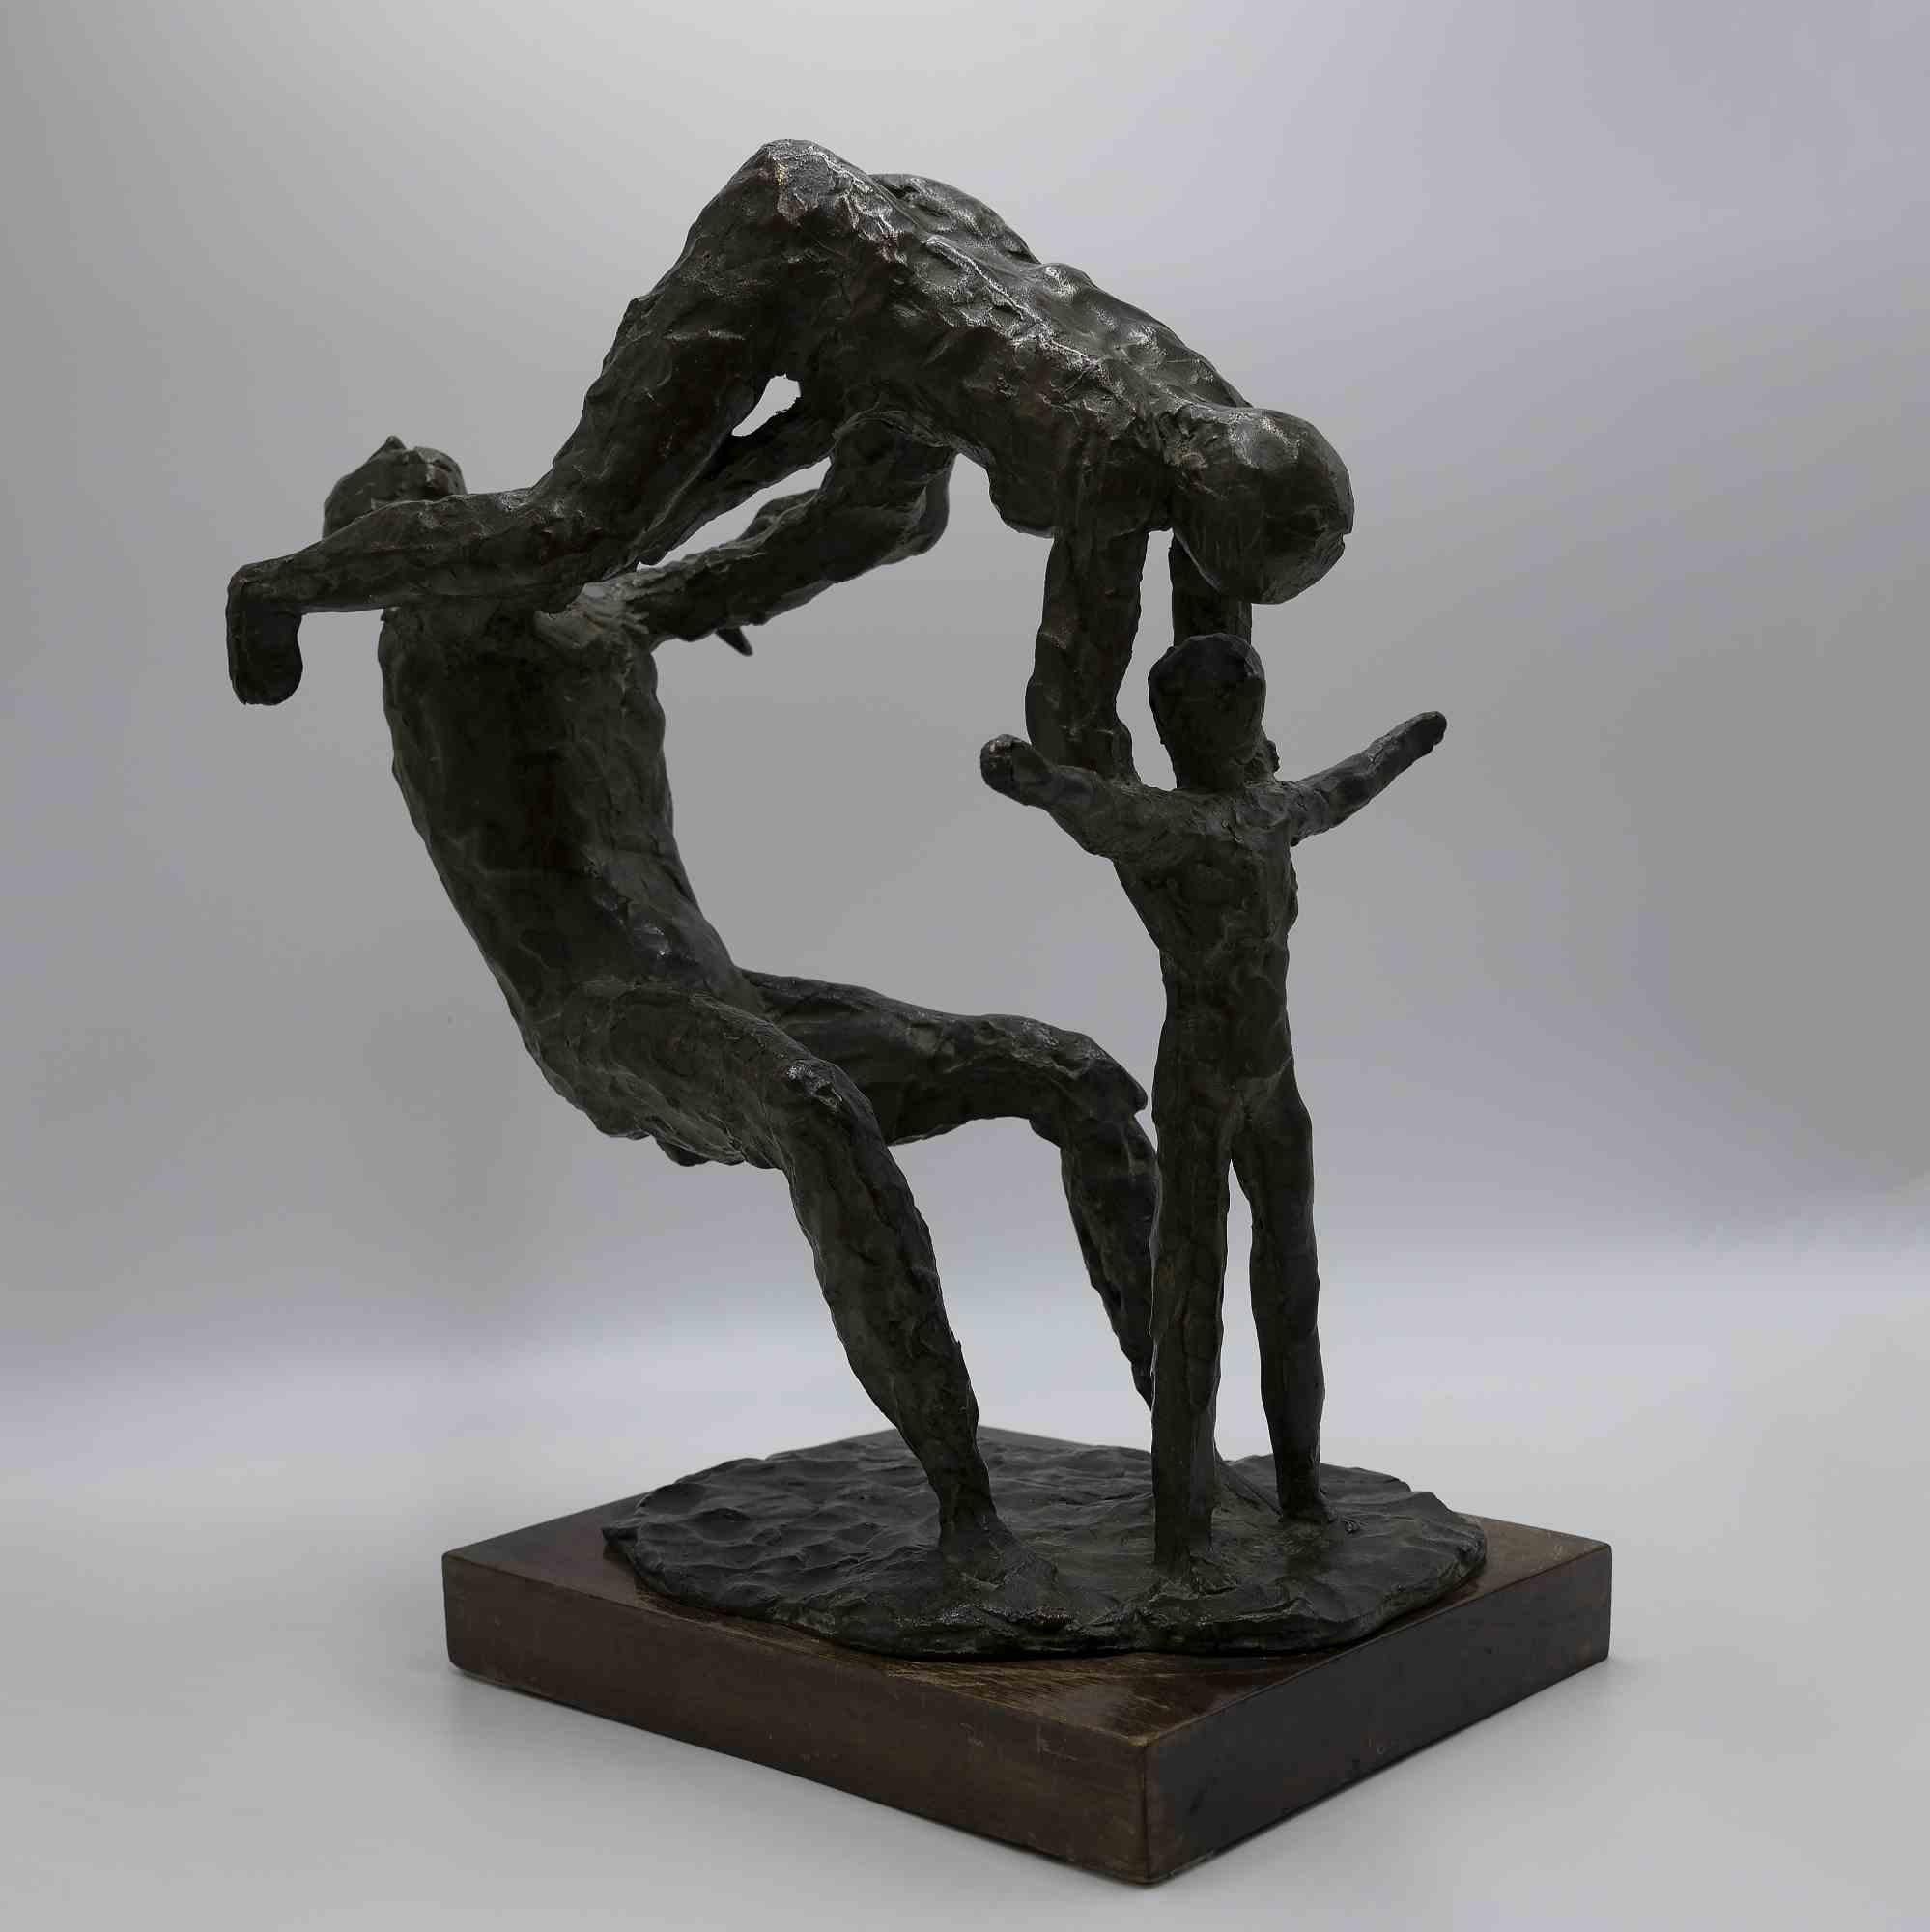 Acrobat Family ist ein Original-Kunstwerk von Arturo Martini aus dem Jahr 1936.

Bronzeskulptur mit Holzsockel.

Provenienz: Pecci Blunt Collection'S.

Veröffentlicht im Gesamtkatalog der Skulpturen des Künstlers, von Gianni Vianello, Nico Stringa